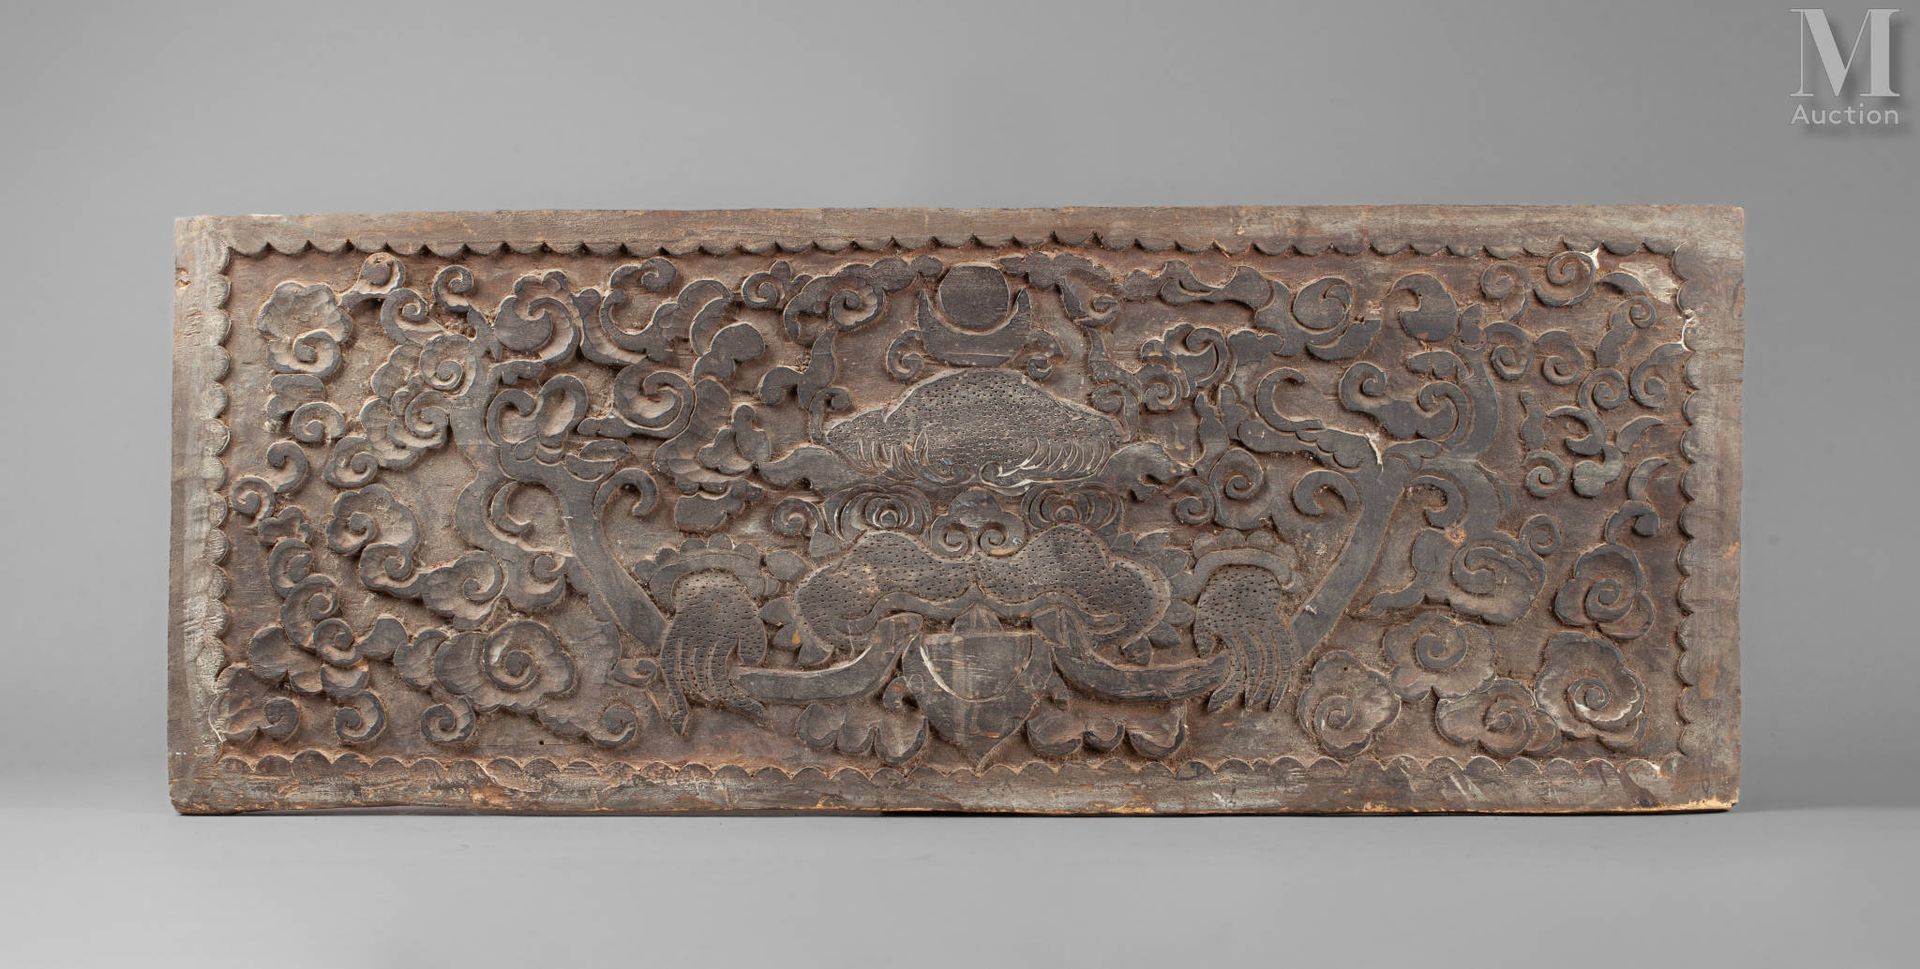 Panneau décoratif Wood
Nepal
33 x 86 x 2 cm